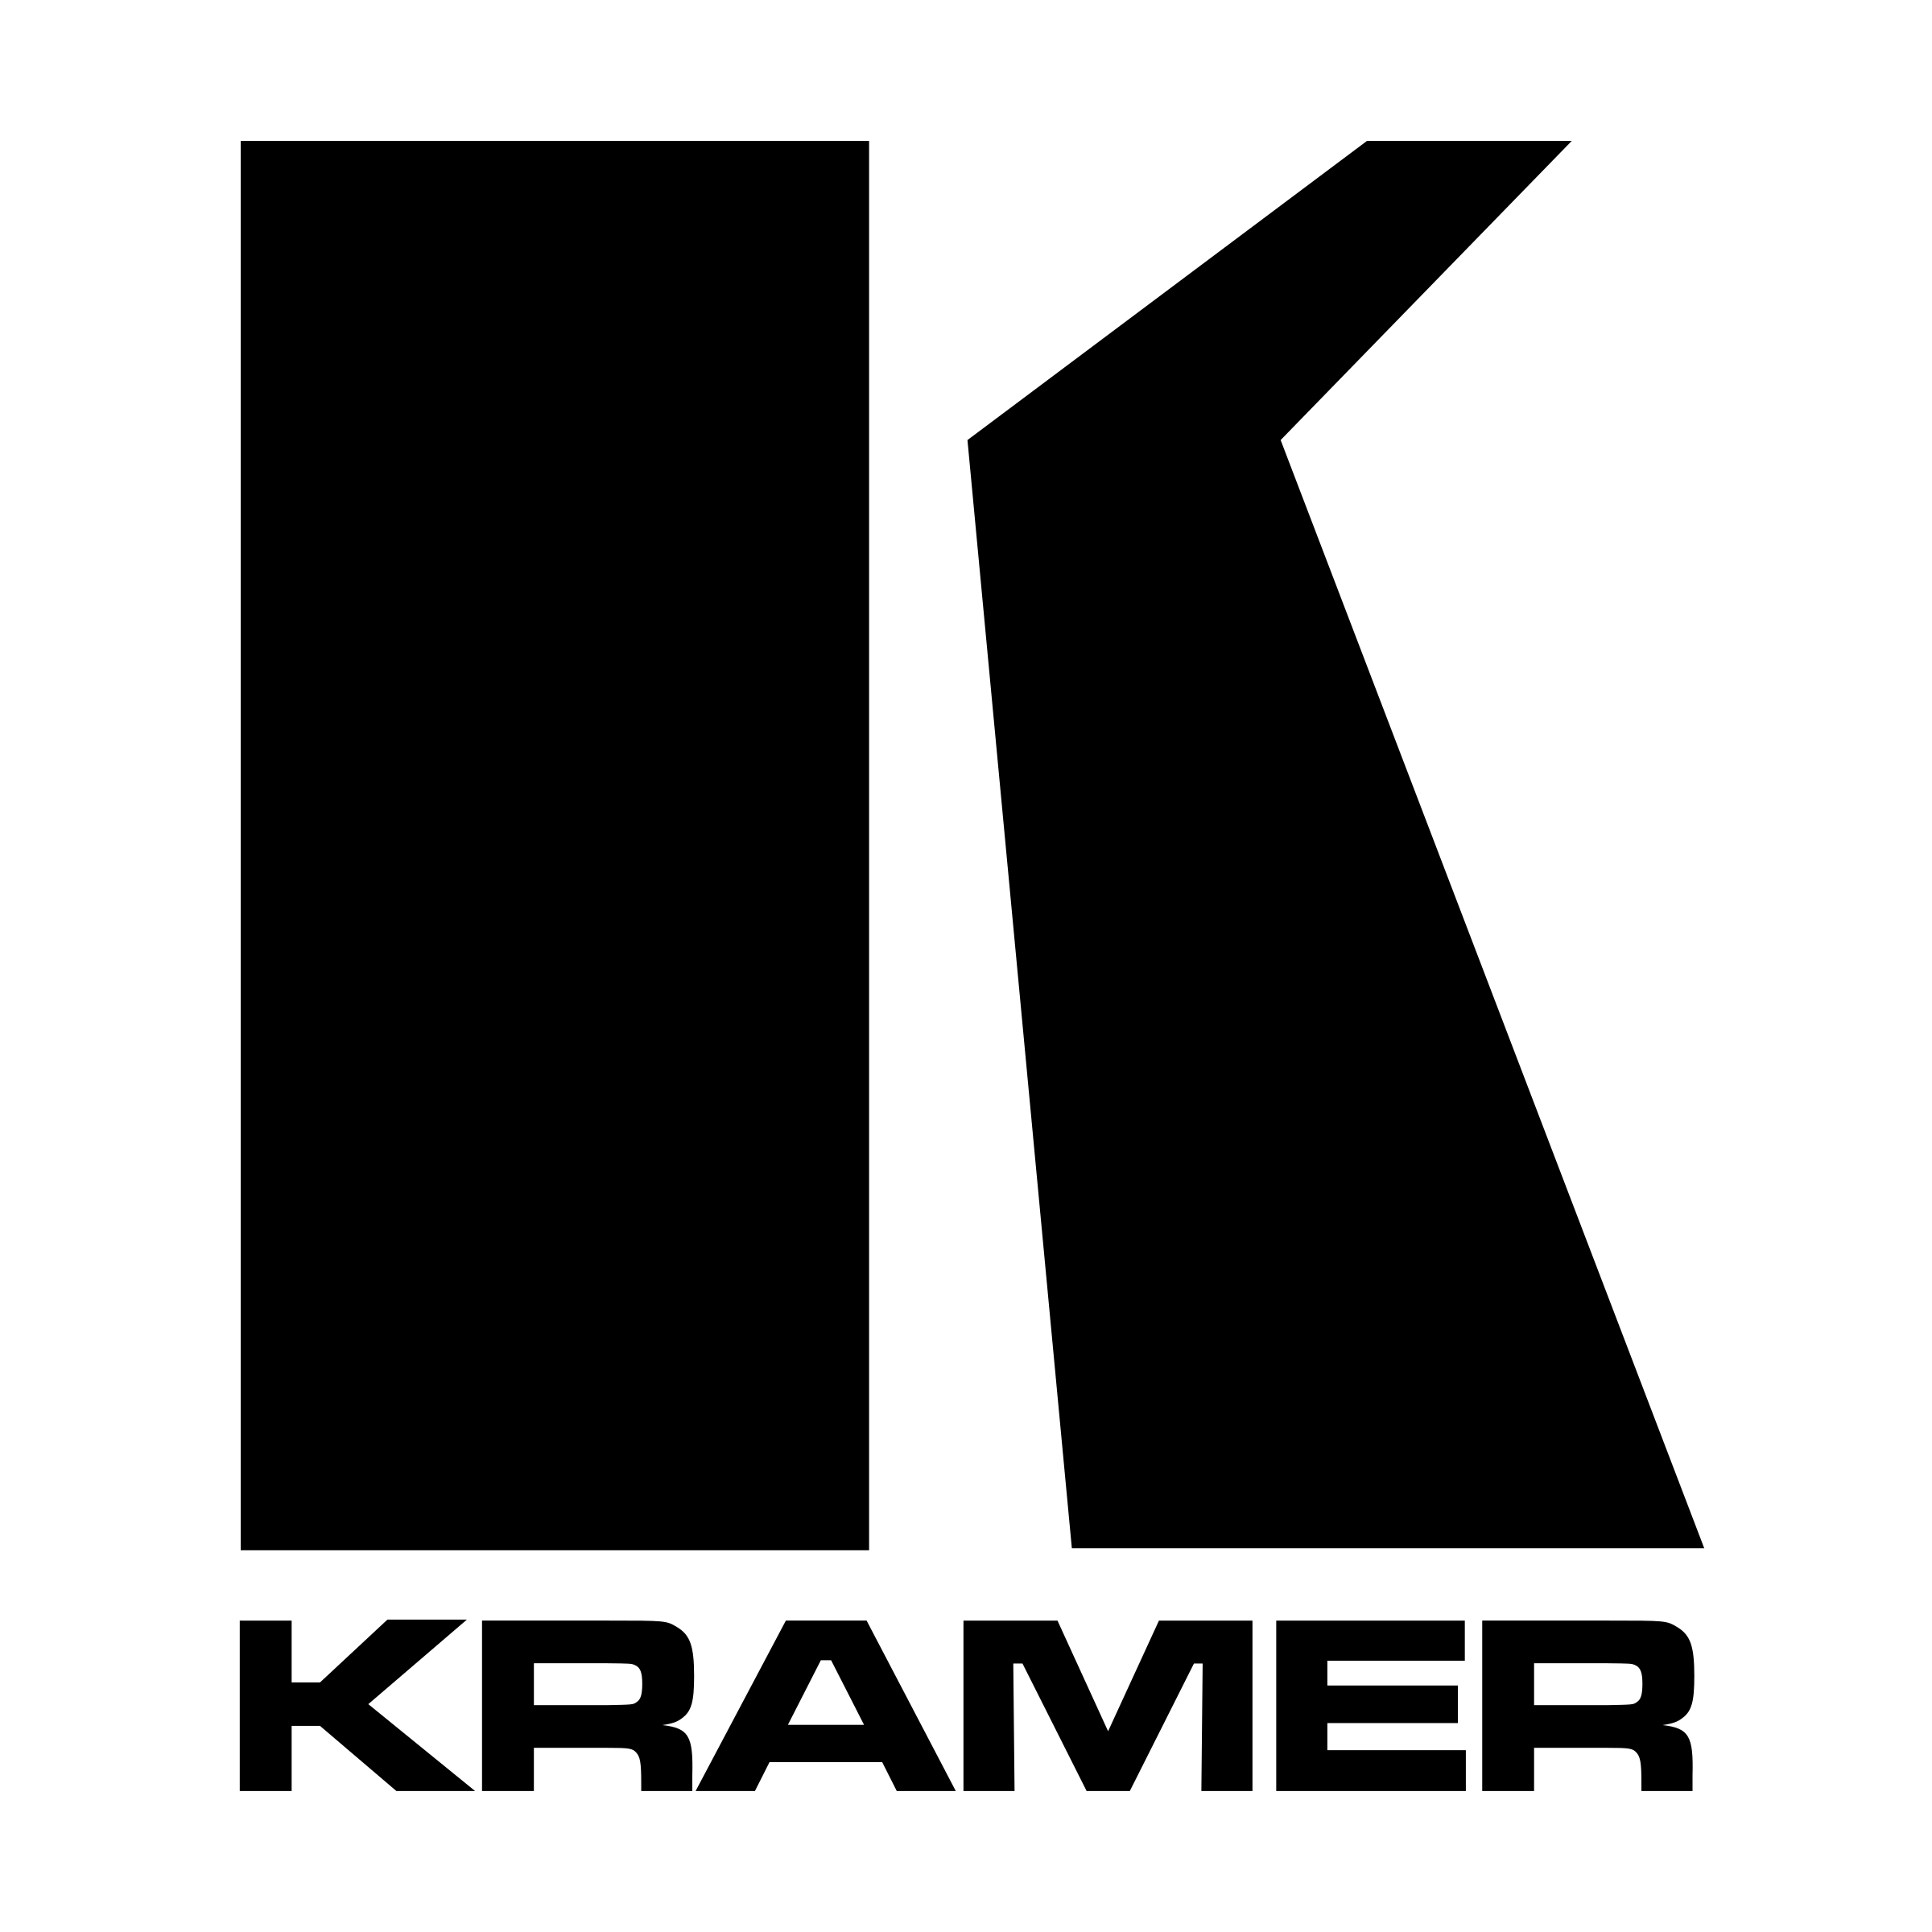 Kramer Logo - Kramer Logo PNG Transparent & SVG Vector - Freebie Supply